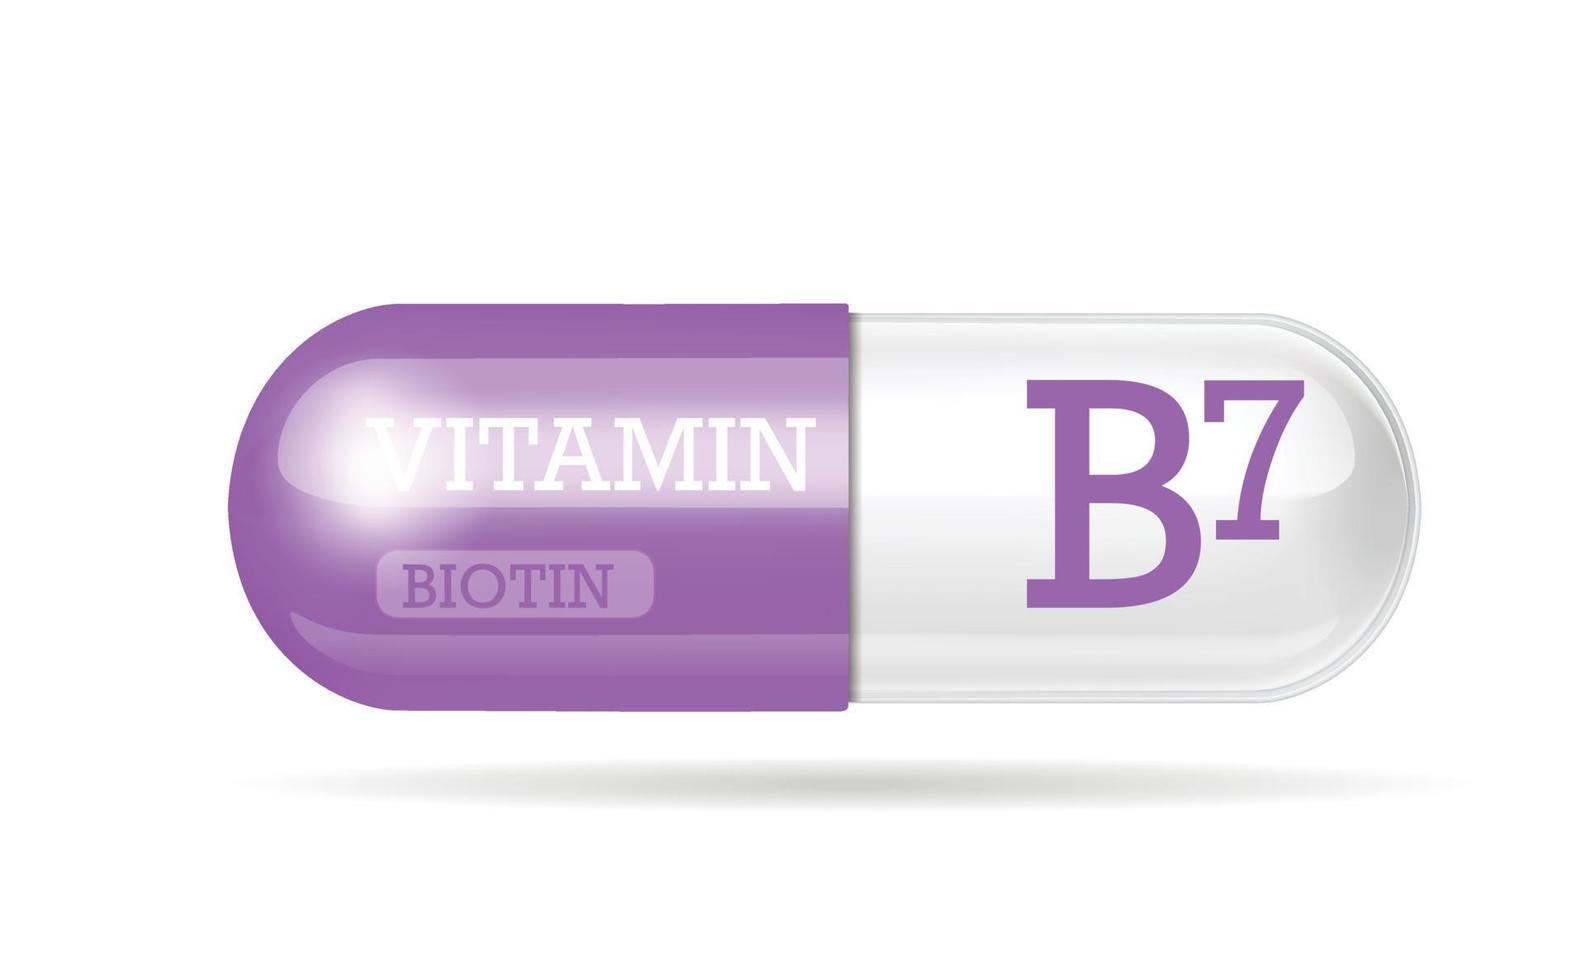 capsule vitamine b7, thiamine, structuur paars, wit. 3D-vitaminecomplex met chemische formule. persoonlijke verzorging, schoonheidsconcept, pil transparante capsule. drugs bedrijfsconcept. vector